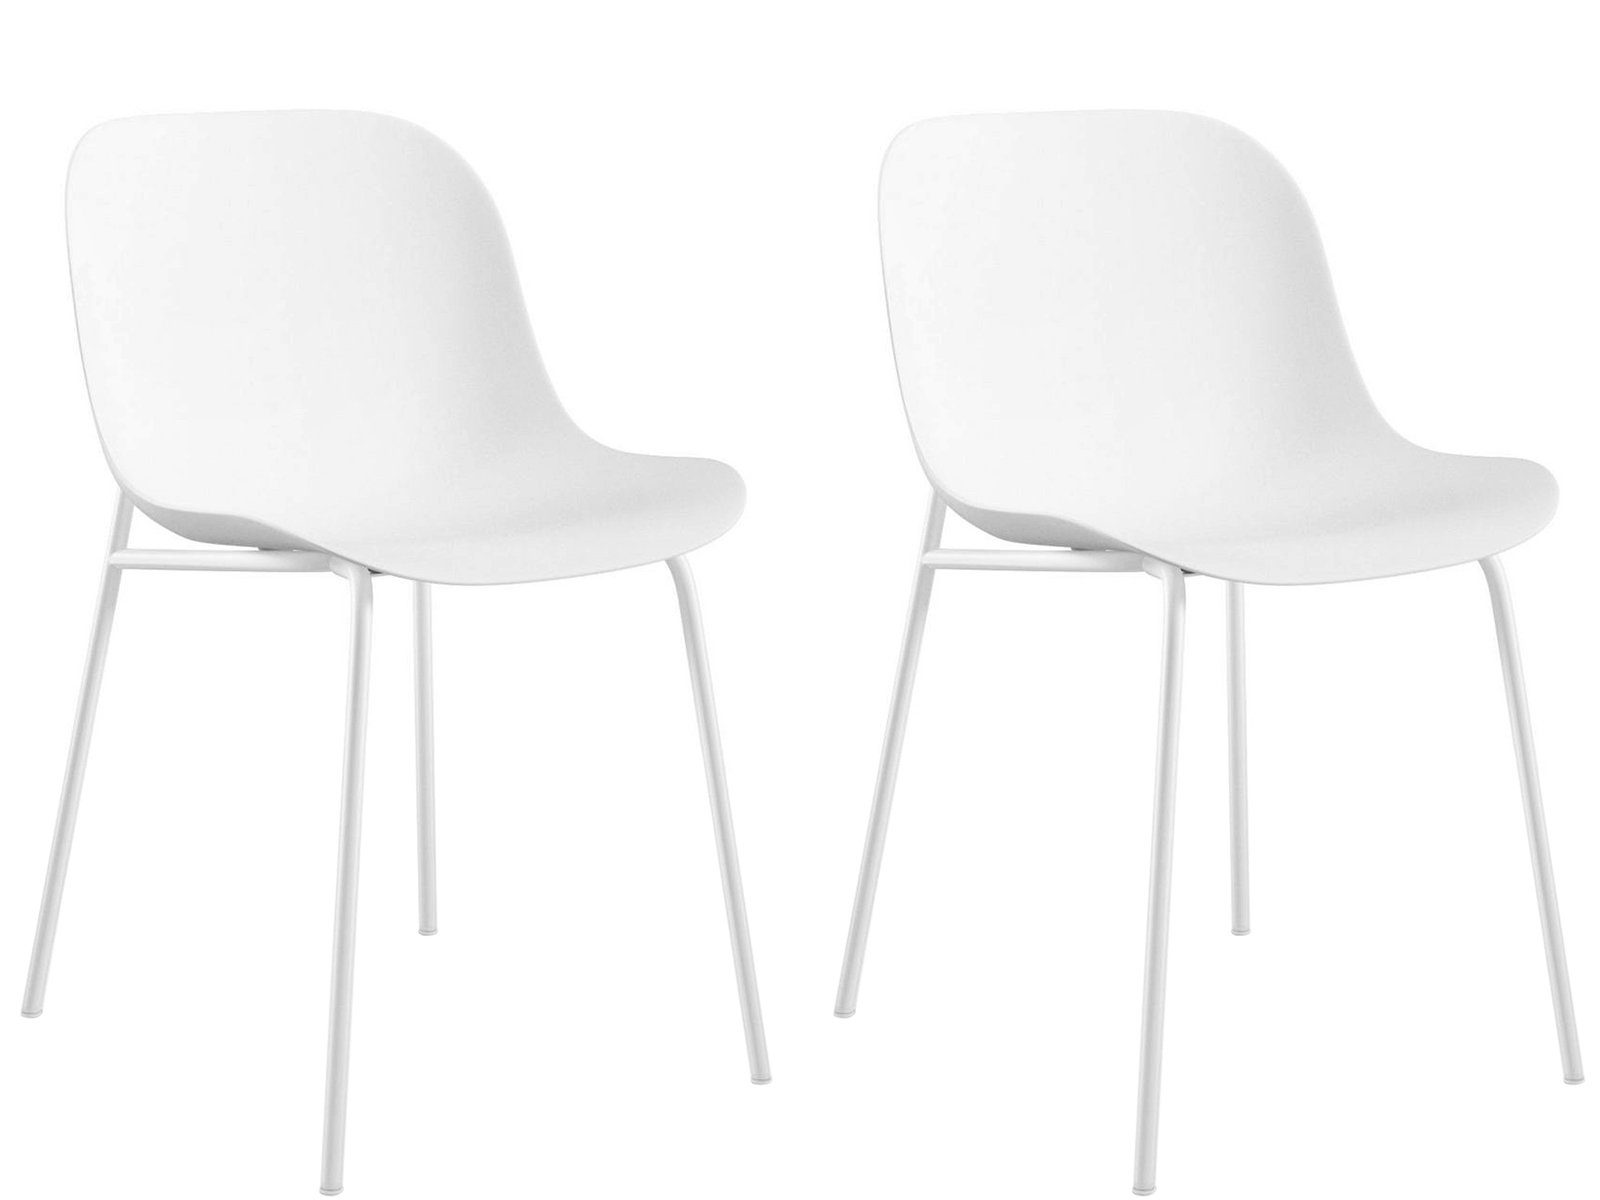 loft24 Stuhl Orca, 2er Set, Gestell aus Metall, Farbenvarianten weiß | weiß